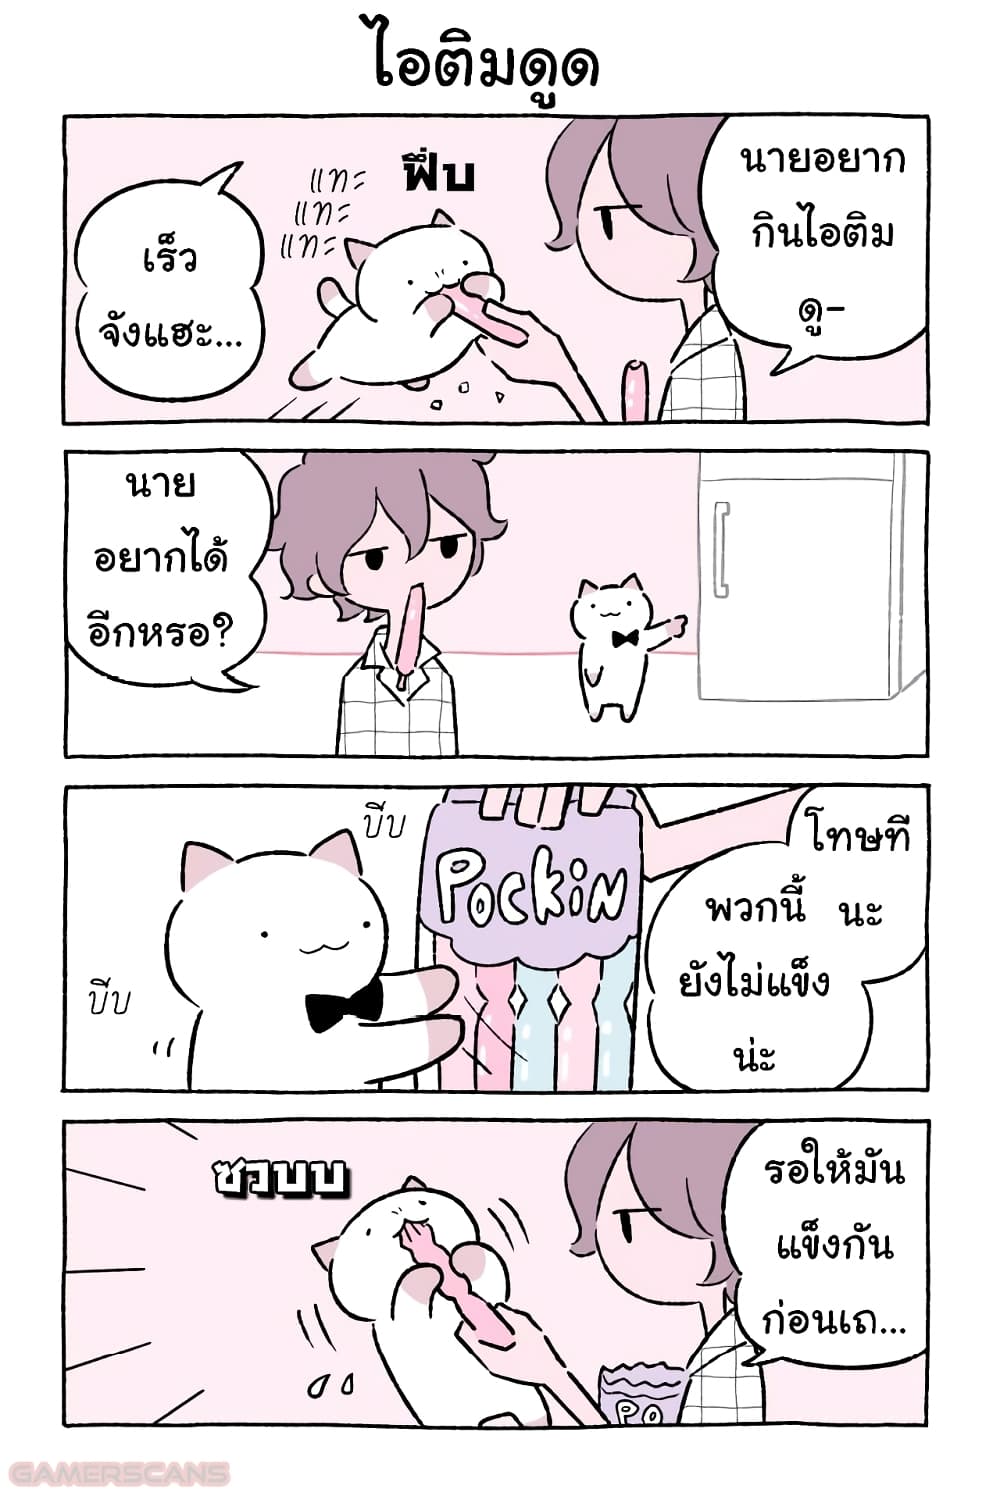 Wonder Cat Kyuu chan คิวจัง แมวมหัศจรรย์ ตอนที่ 44 (3)